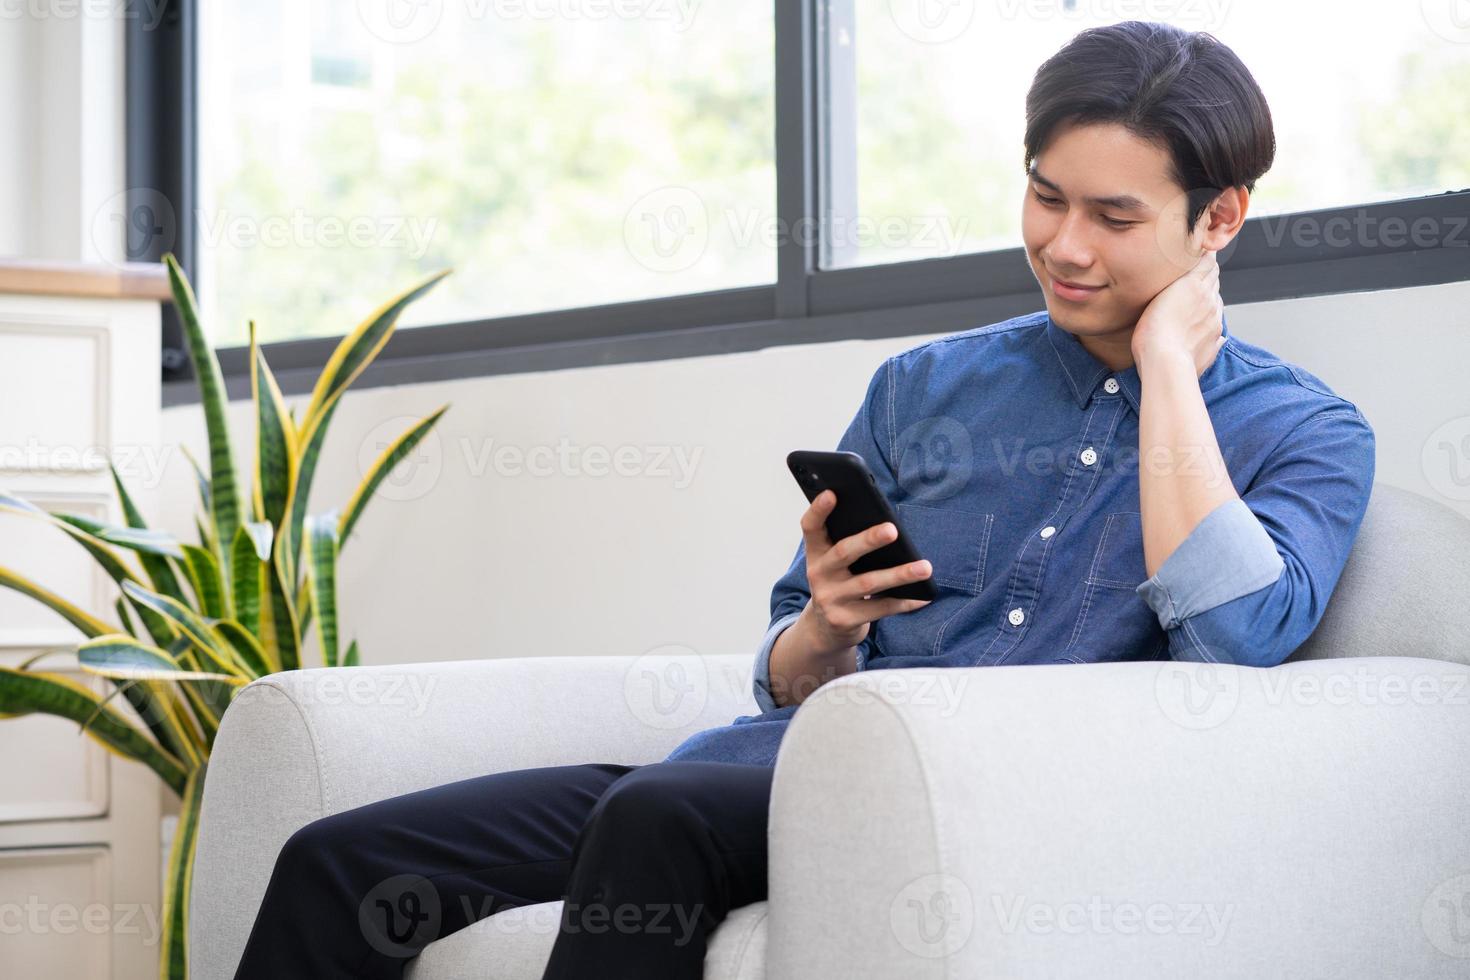 jovem asiático usando o telefone na sala de estar foto